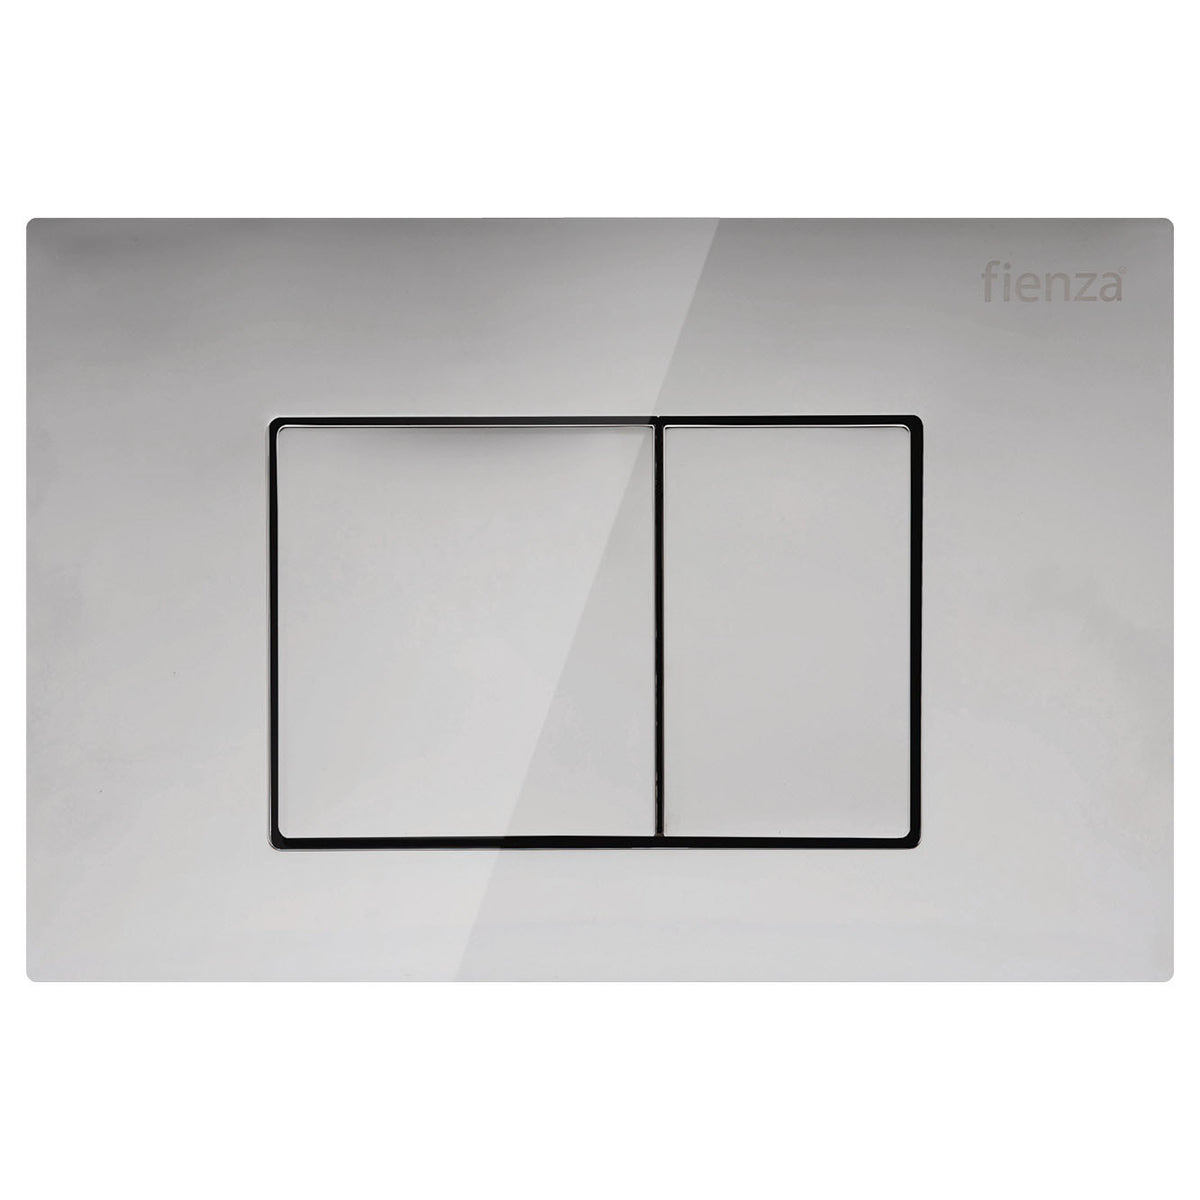 Fienza R&T Square Button Flush Plate, Chrome